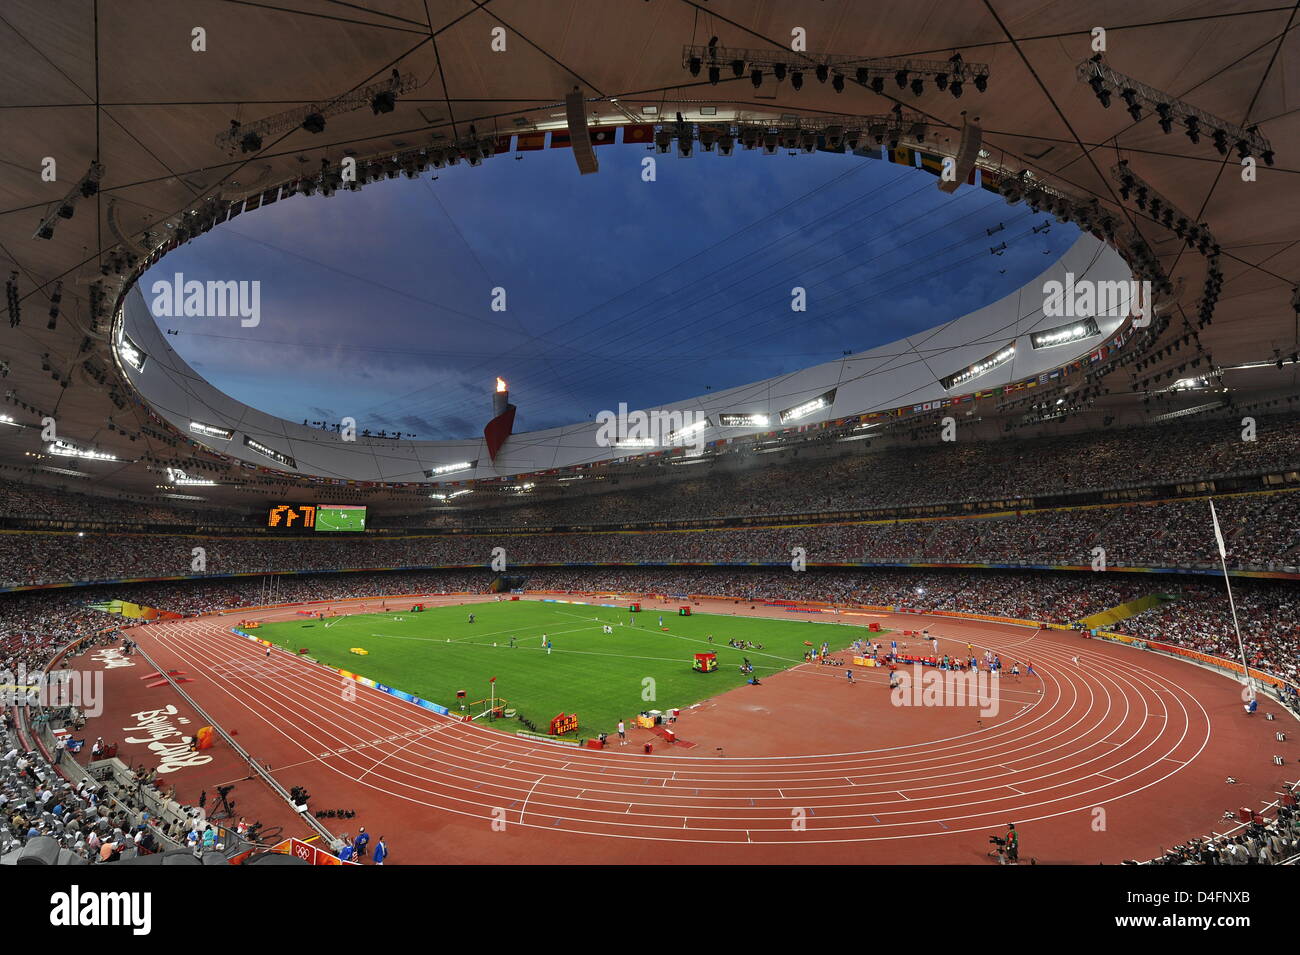 Althletes während des Track-Wettbewerbs an der nationalen Stadion Vogelnest von den Olympischen Spielen 2008 in Peking, China, 16. August 2008 abgebildet. Foto: Karl-Josef Hildenbrand Stockfoto